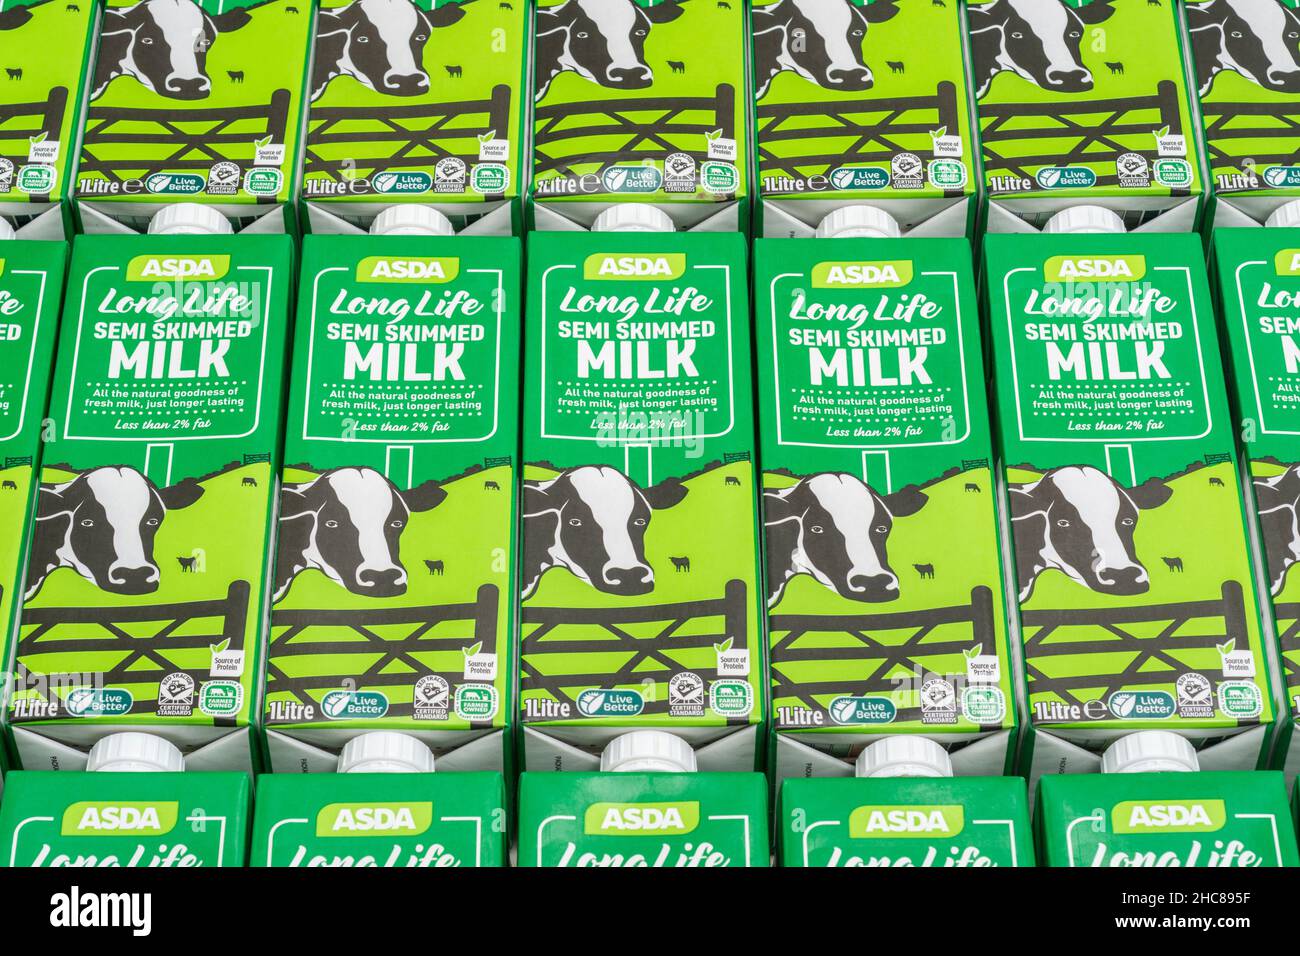 Cartons de papier de 1 litres de lait demi-écrémé UHT longue durée de vie propre à l'ASDA. Pour les produits alimentaires britanniques, l'industrie laitière britannique, crise de la chaîne d'approvisionnement Royaume-Uni. Banque D'Images